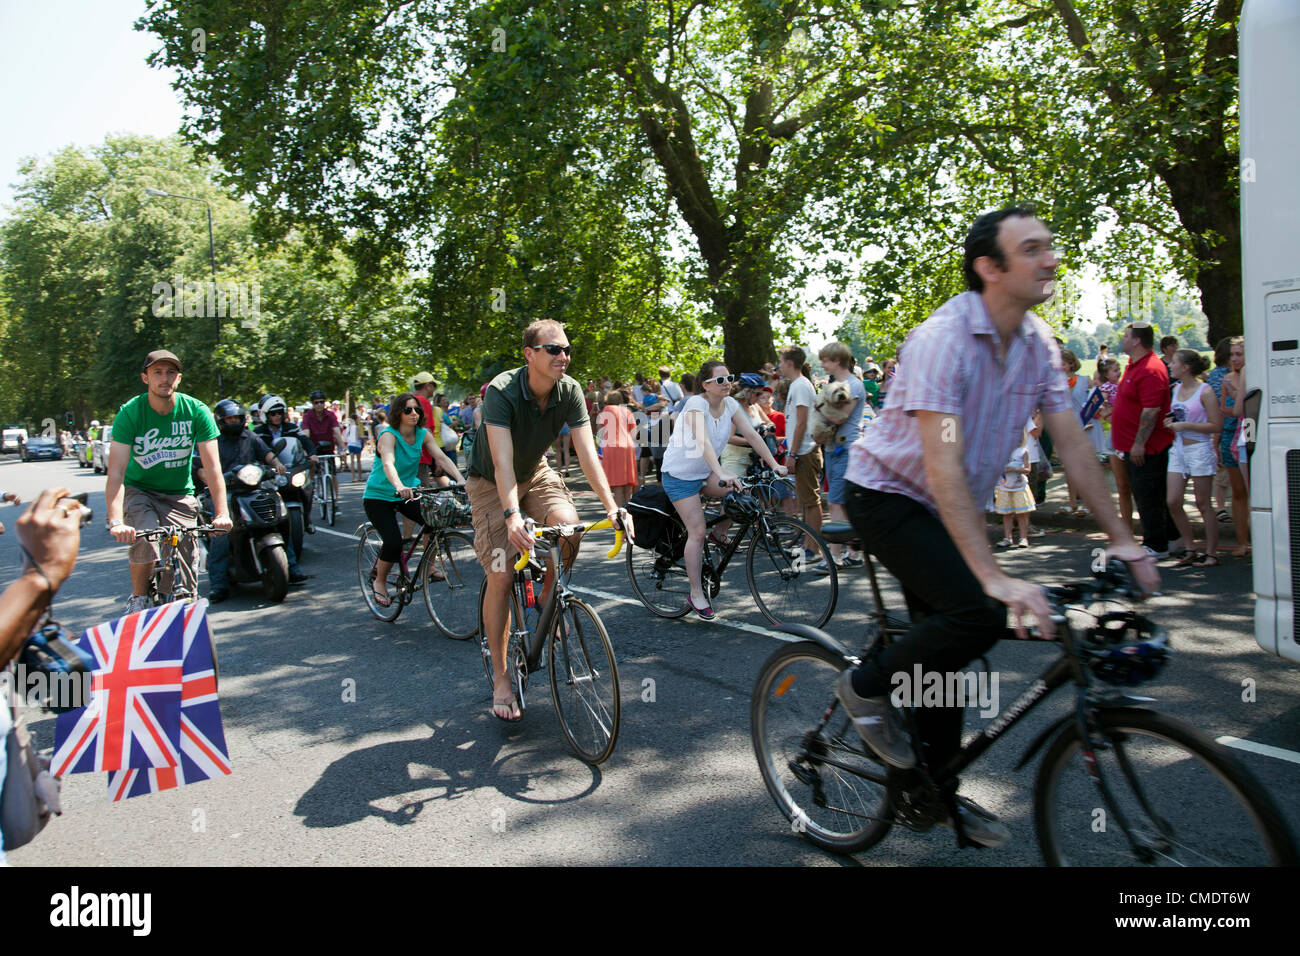 26 luglio 2012, la Torcia Olimpica, Clapham Common, Londra, Regno Unito - 12.59 h - Le persone seguono la torcia processione del relè sul retro le loro biciclette Foto Stock